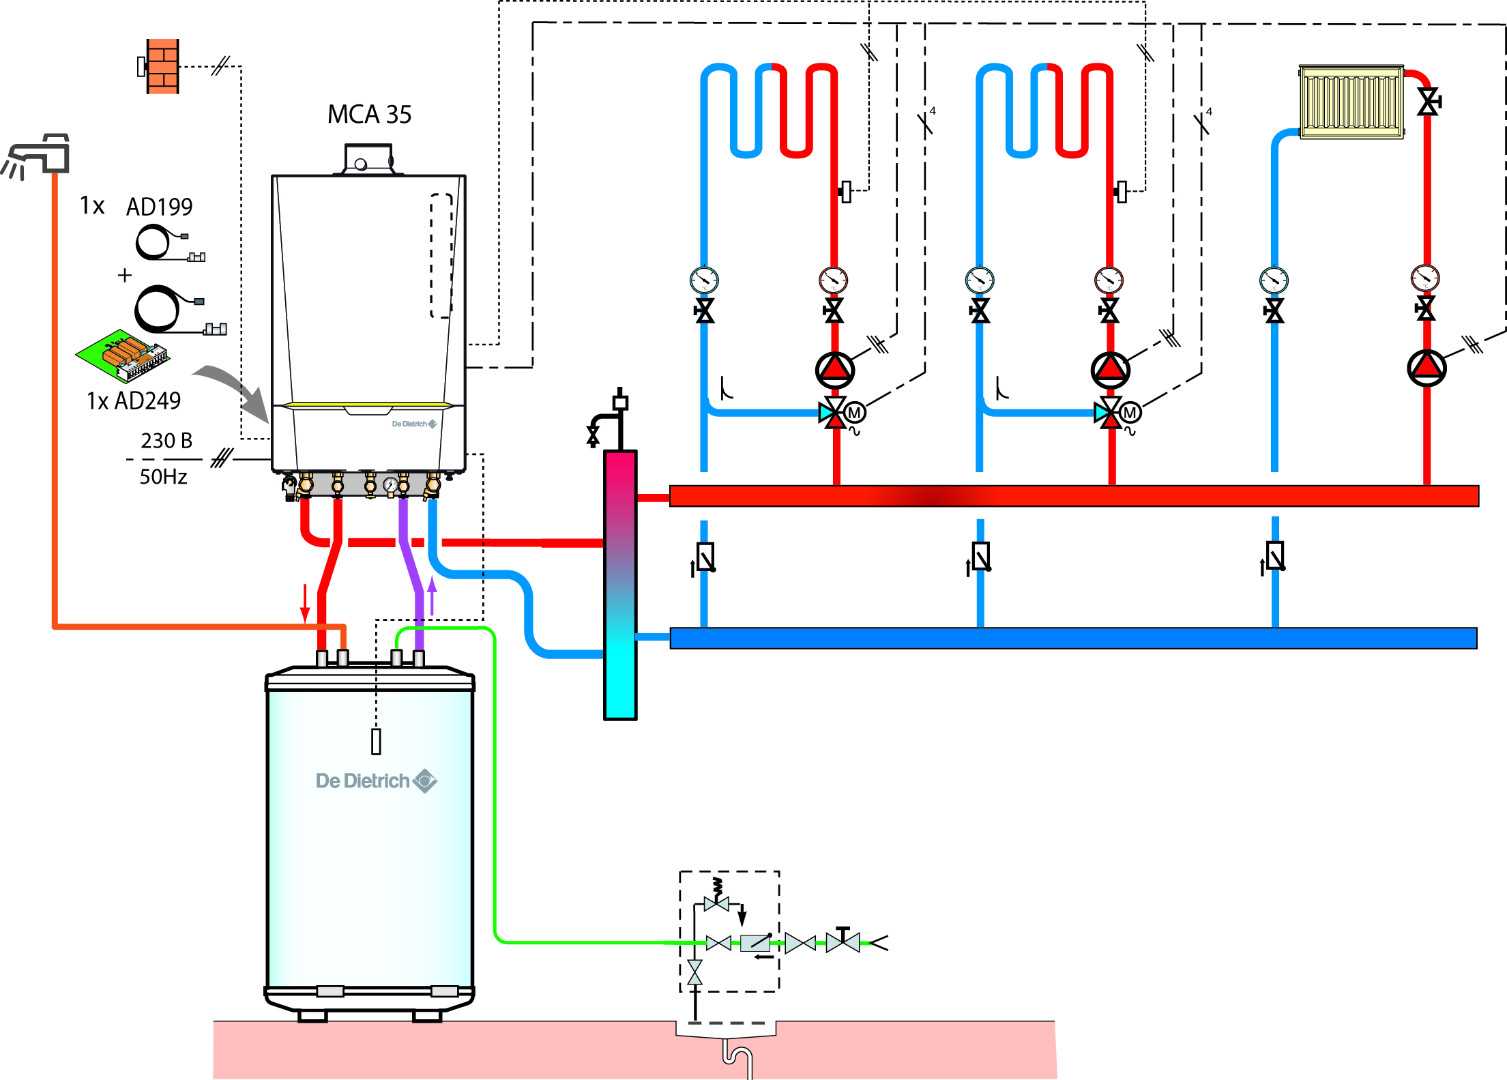 Разбор рециркуляции горячей воды в частном доме – схемы и технологические нюансы